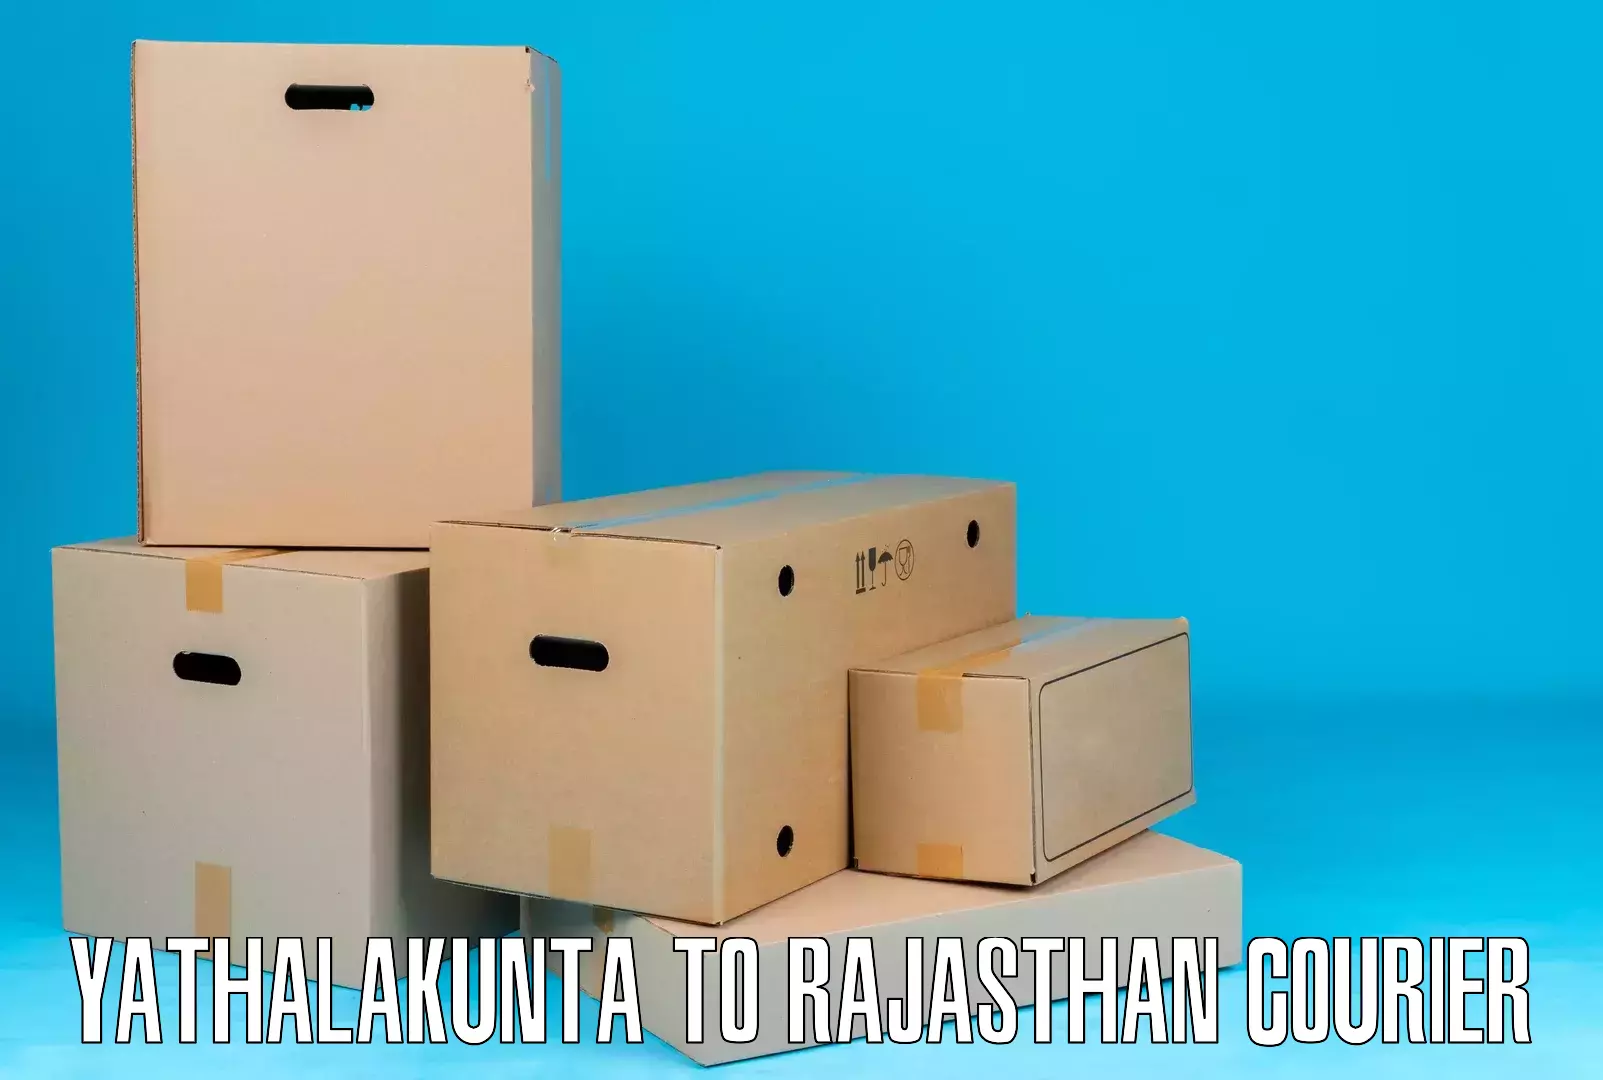 Supply chain delivery Yathalakunta to Viratnagar